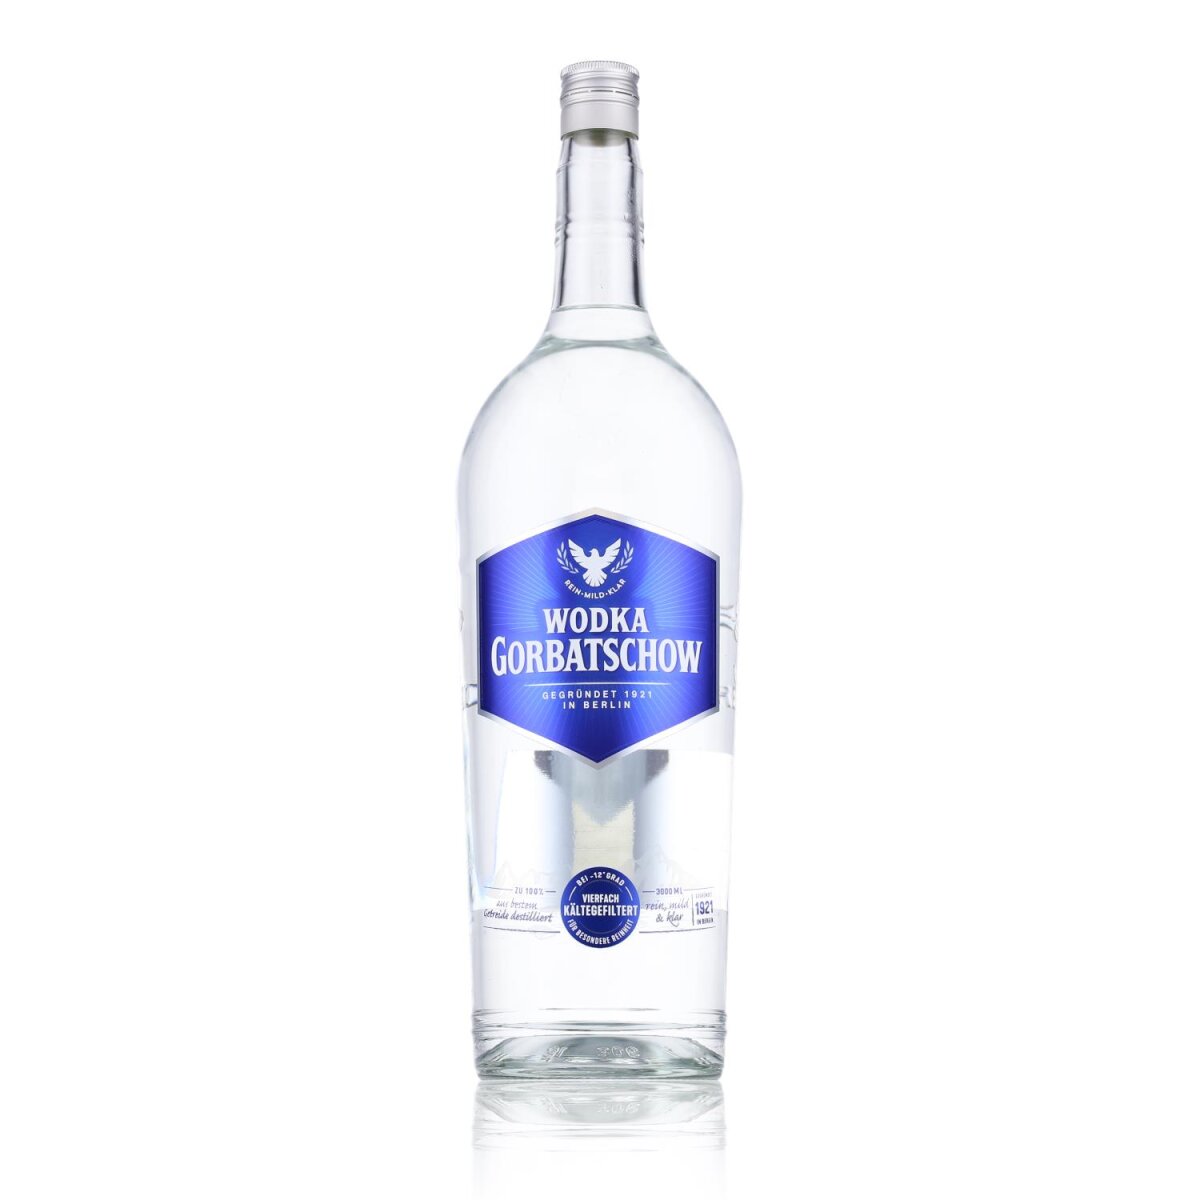 Gorbatschow Wodka 37,5% Vol. 3l, € 47,29